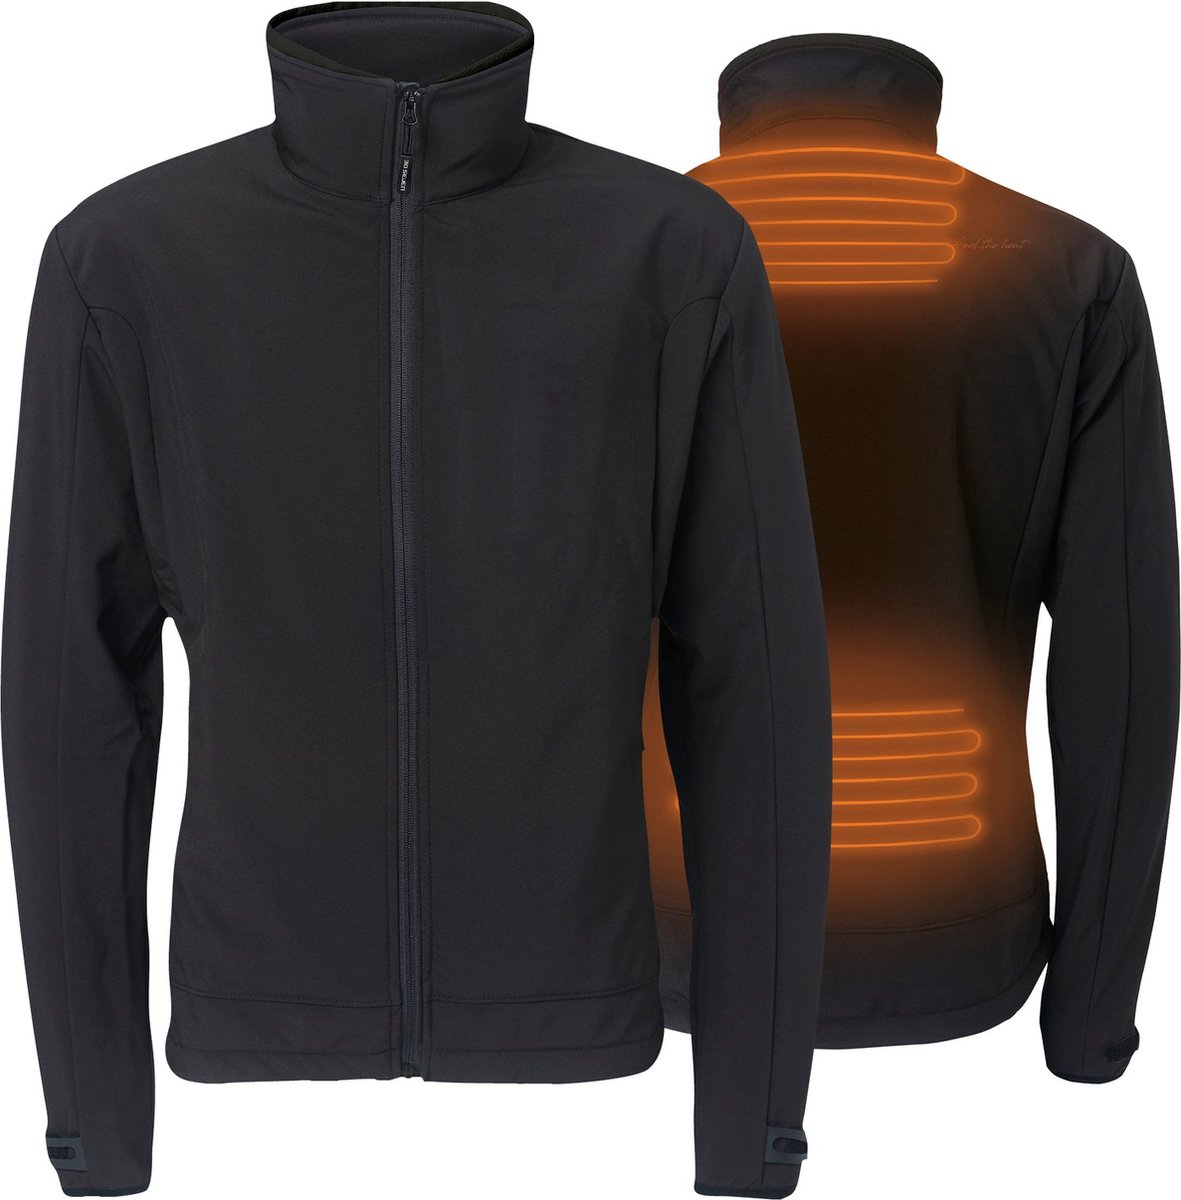 Verwarmde Softshell Jas - Regular Fit voor mannen - Met extra warme fleecevoering - Rapid power technologie - zwart